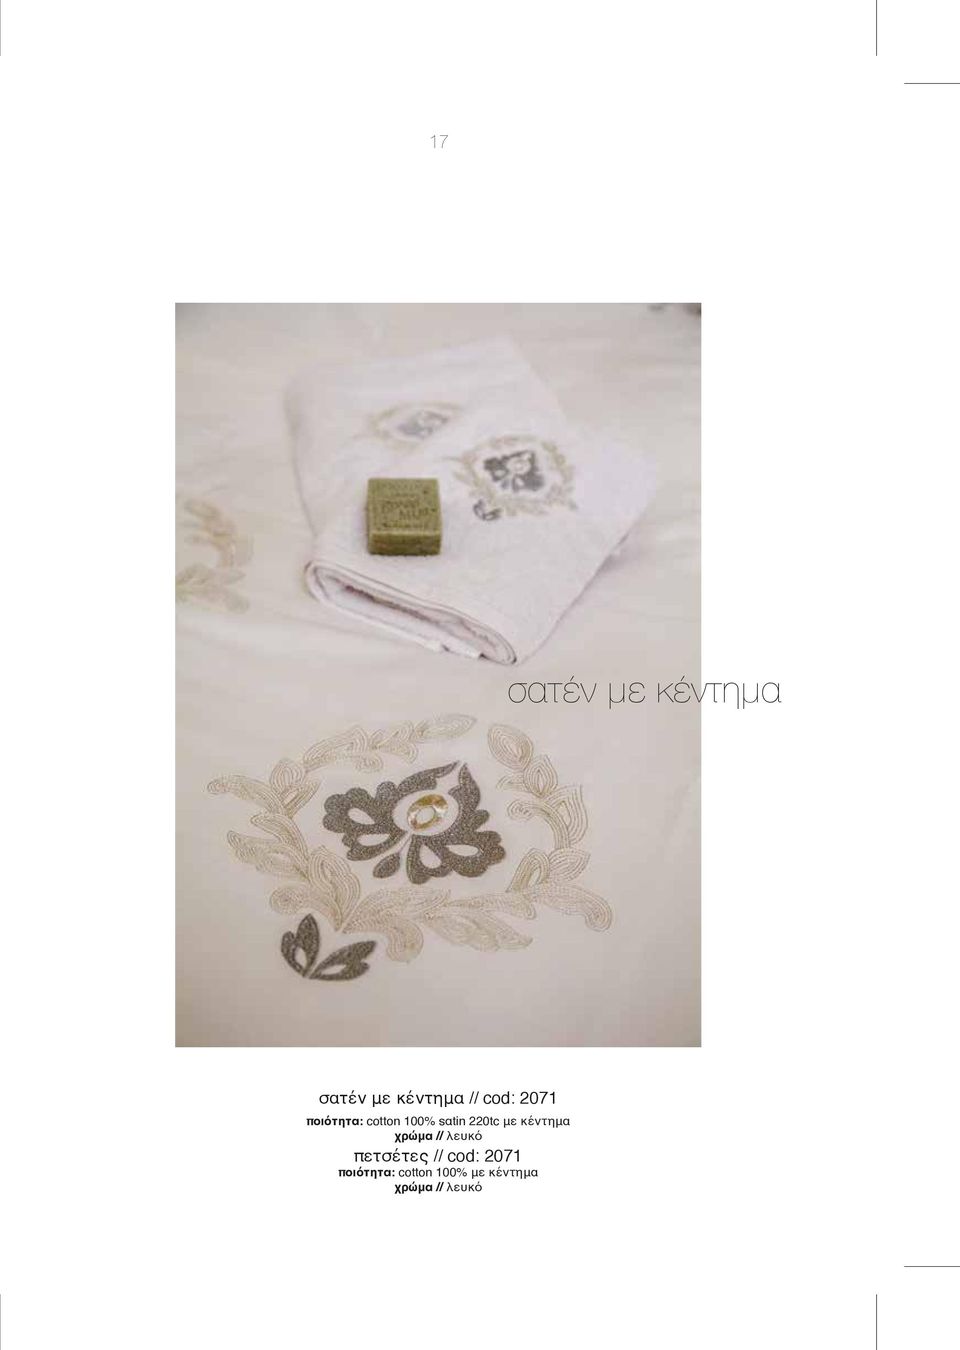 κέντημα χρώμα // λευκό πετσέτες // cod: 2071